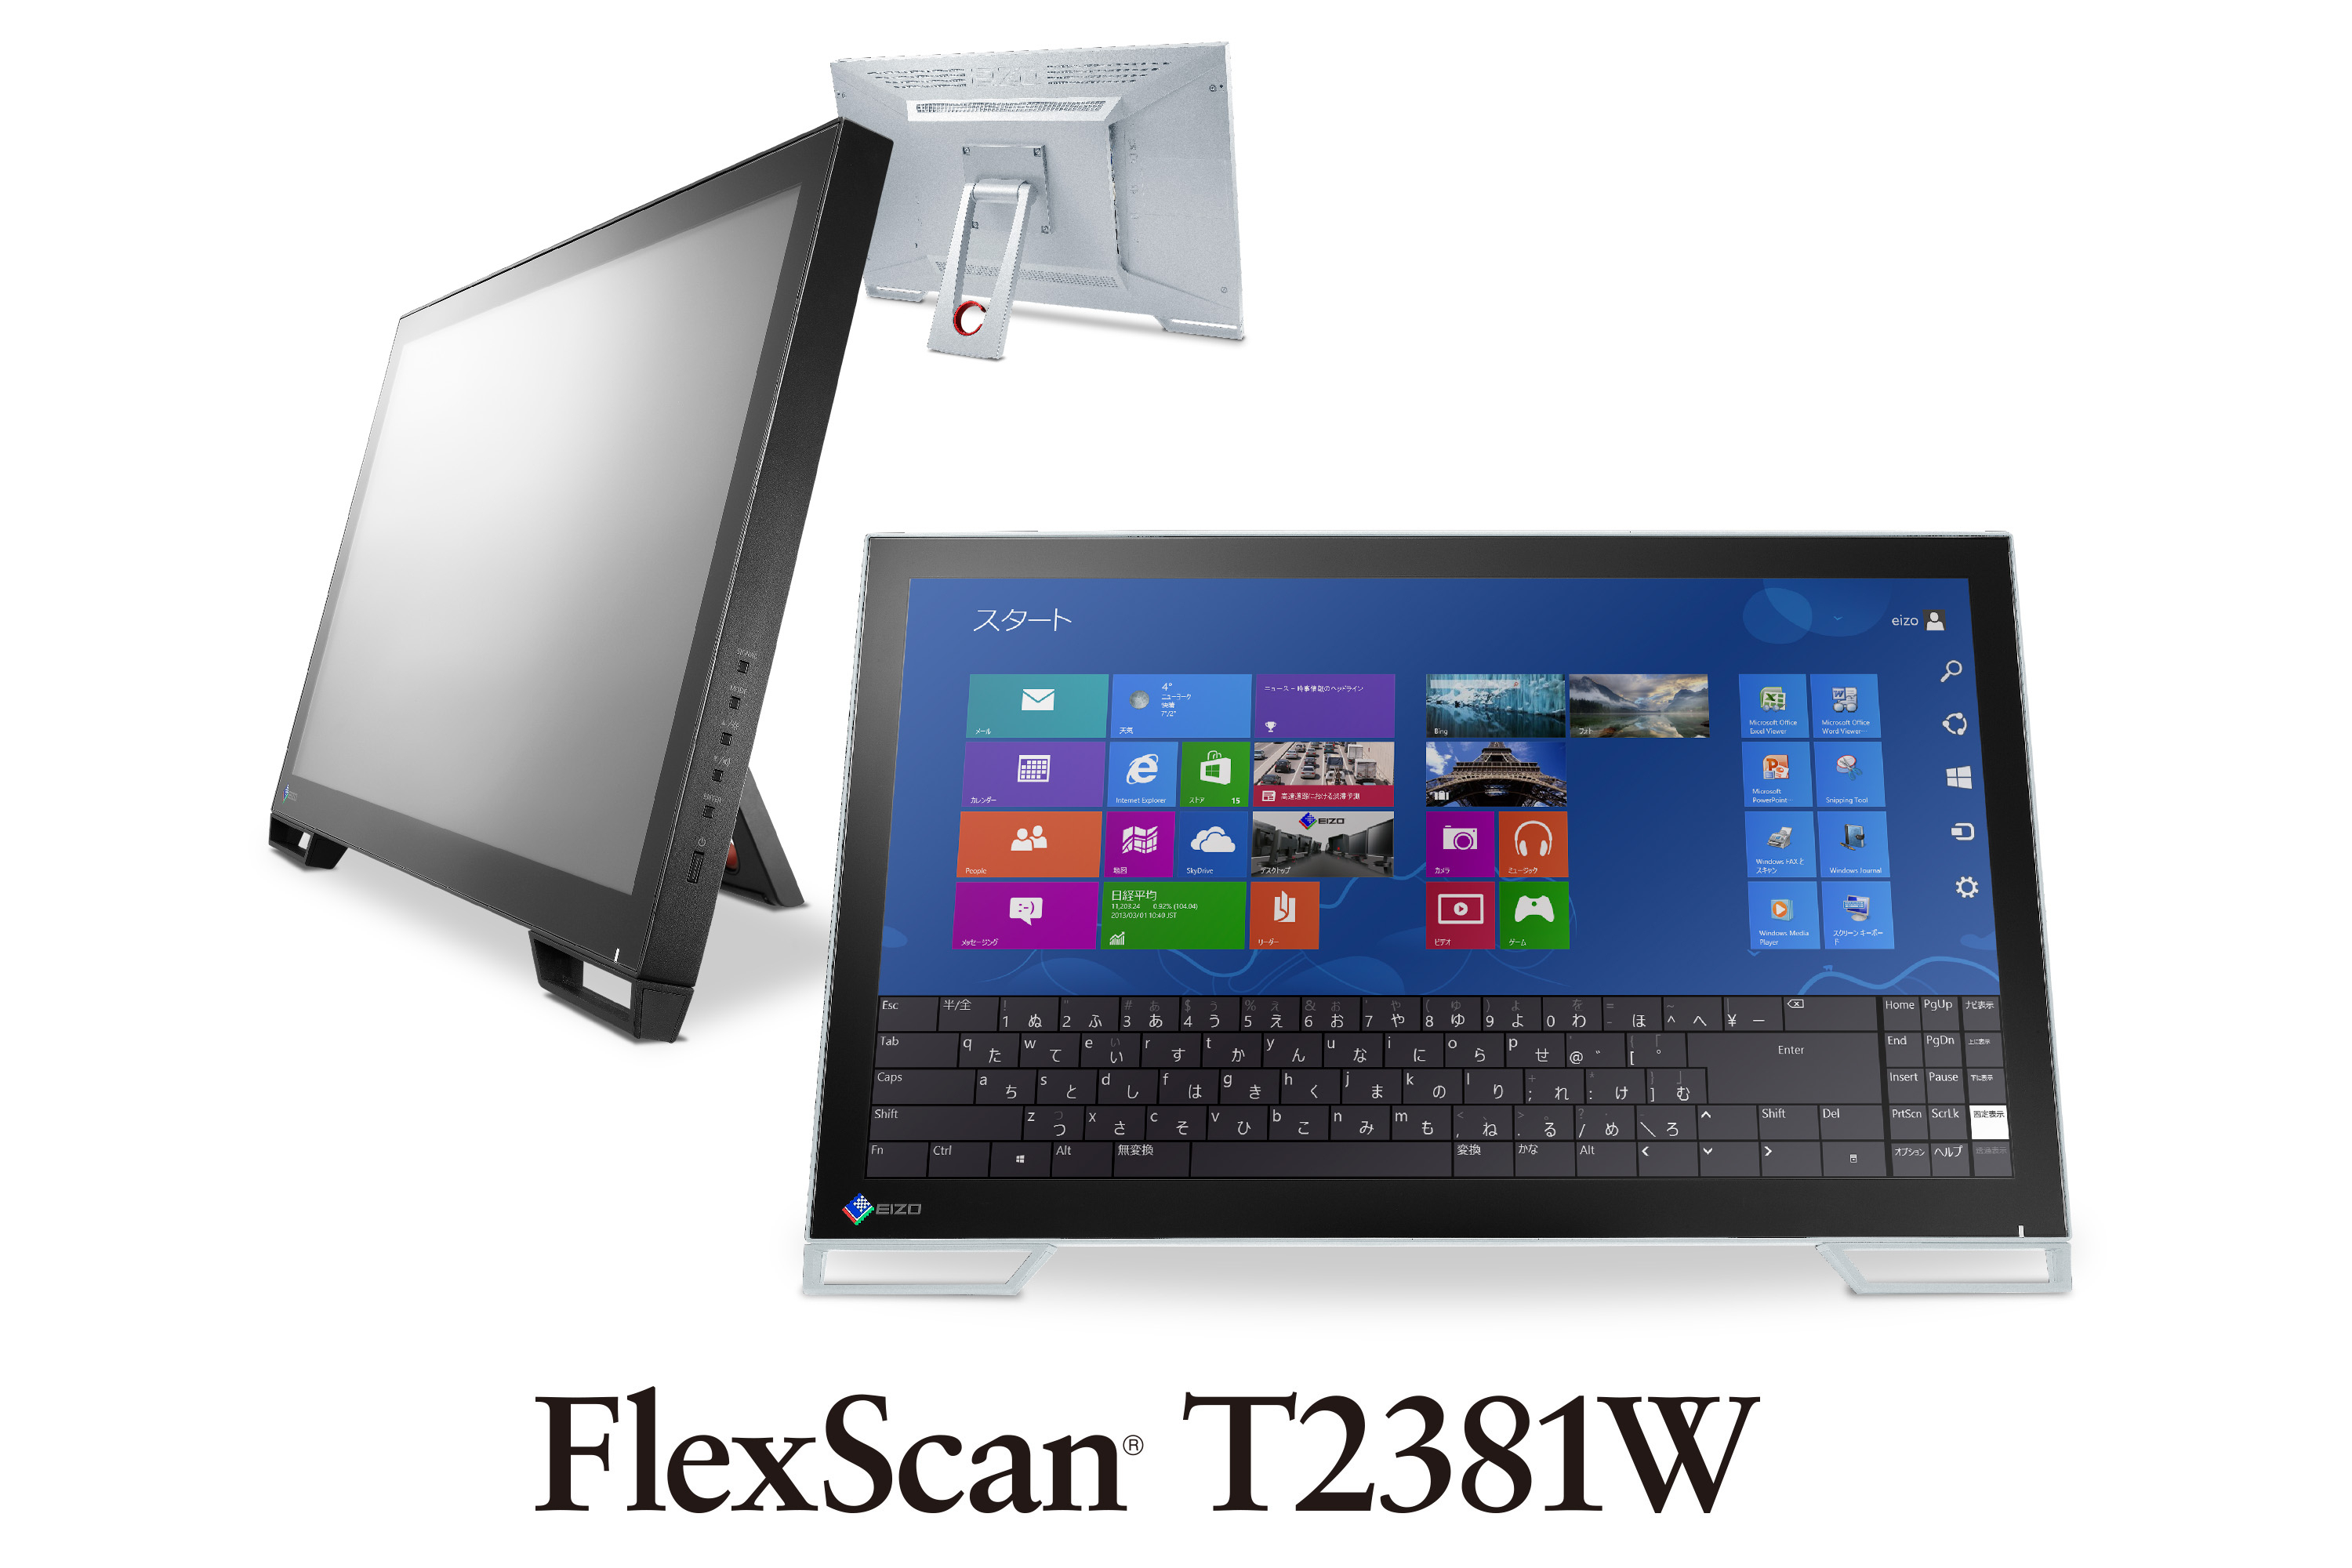 FlexScan T2381W